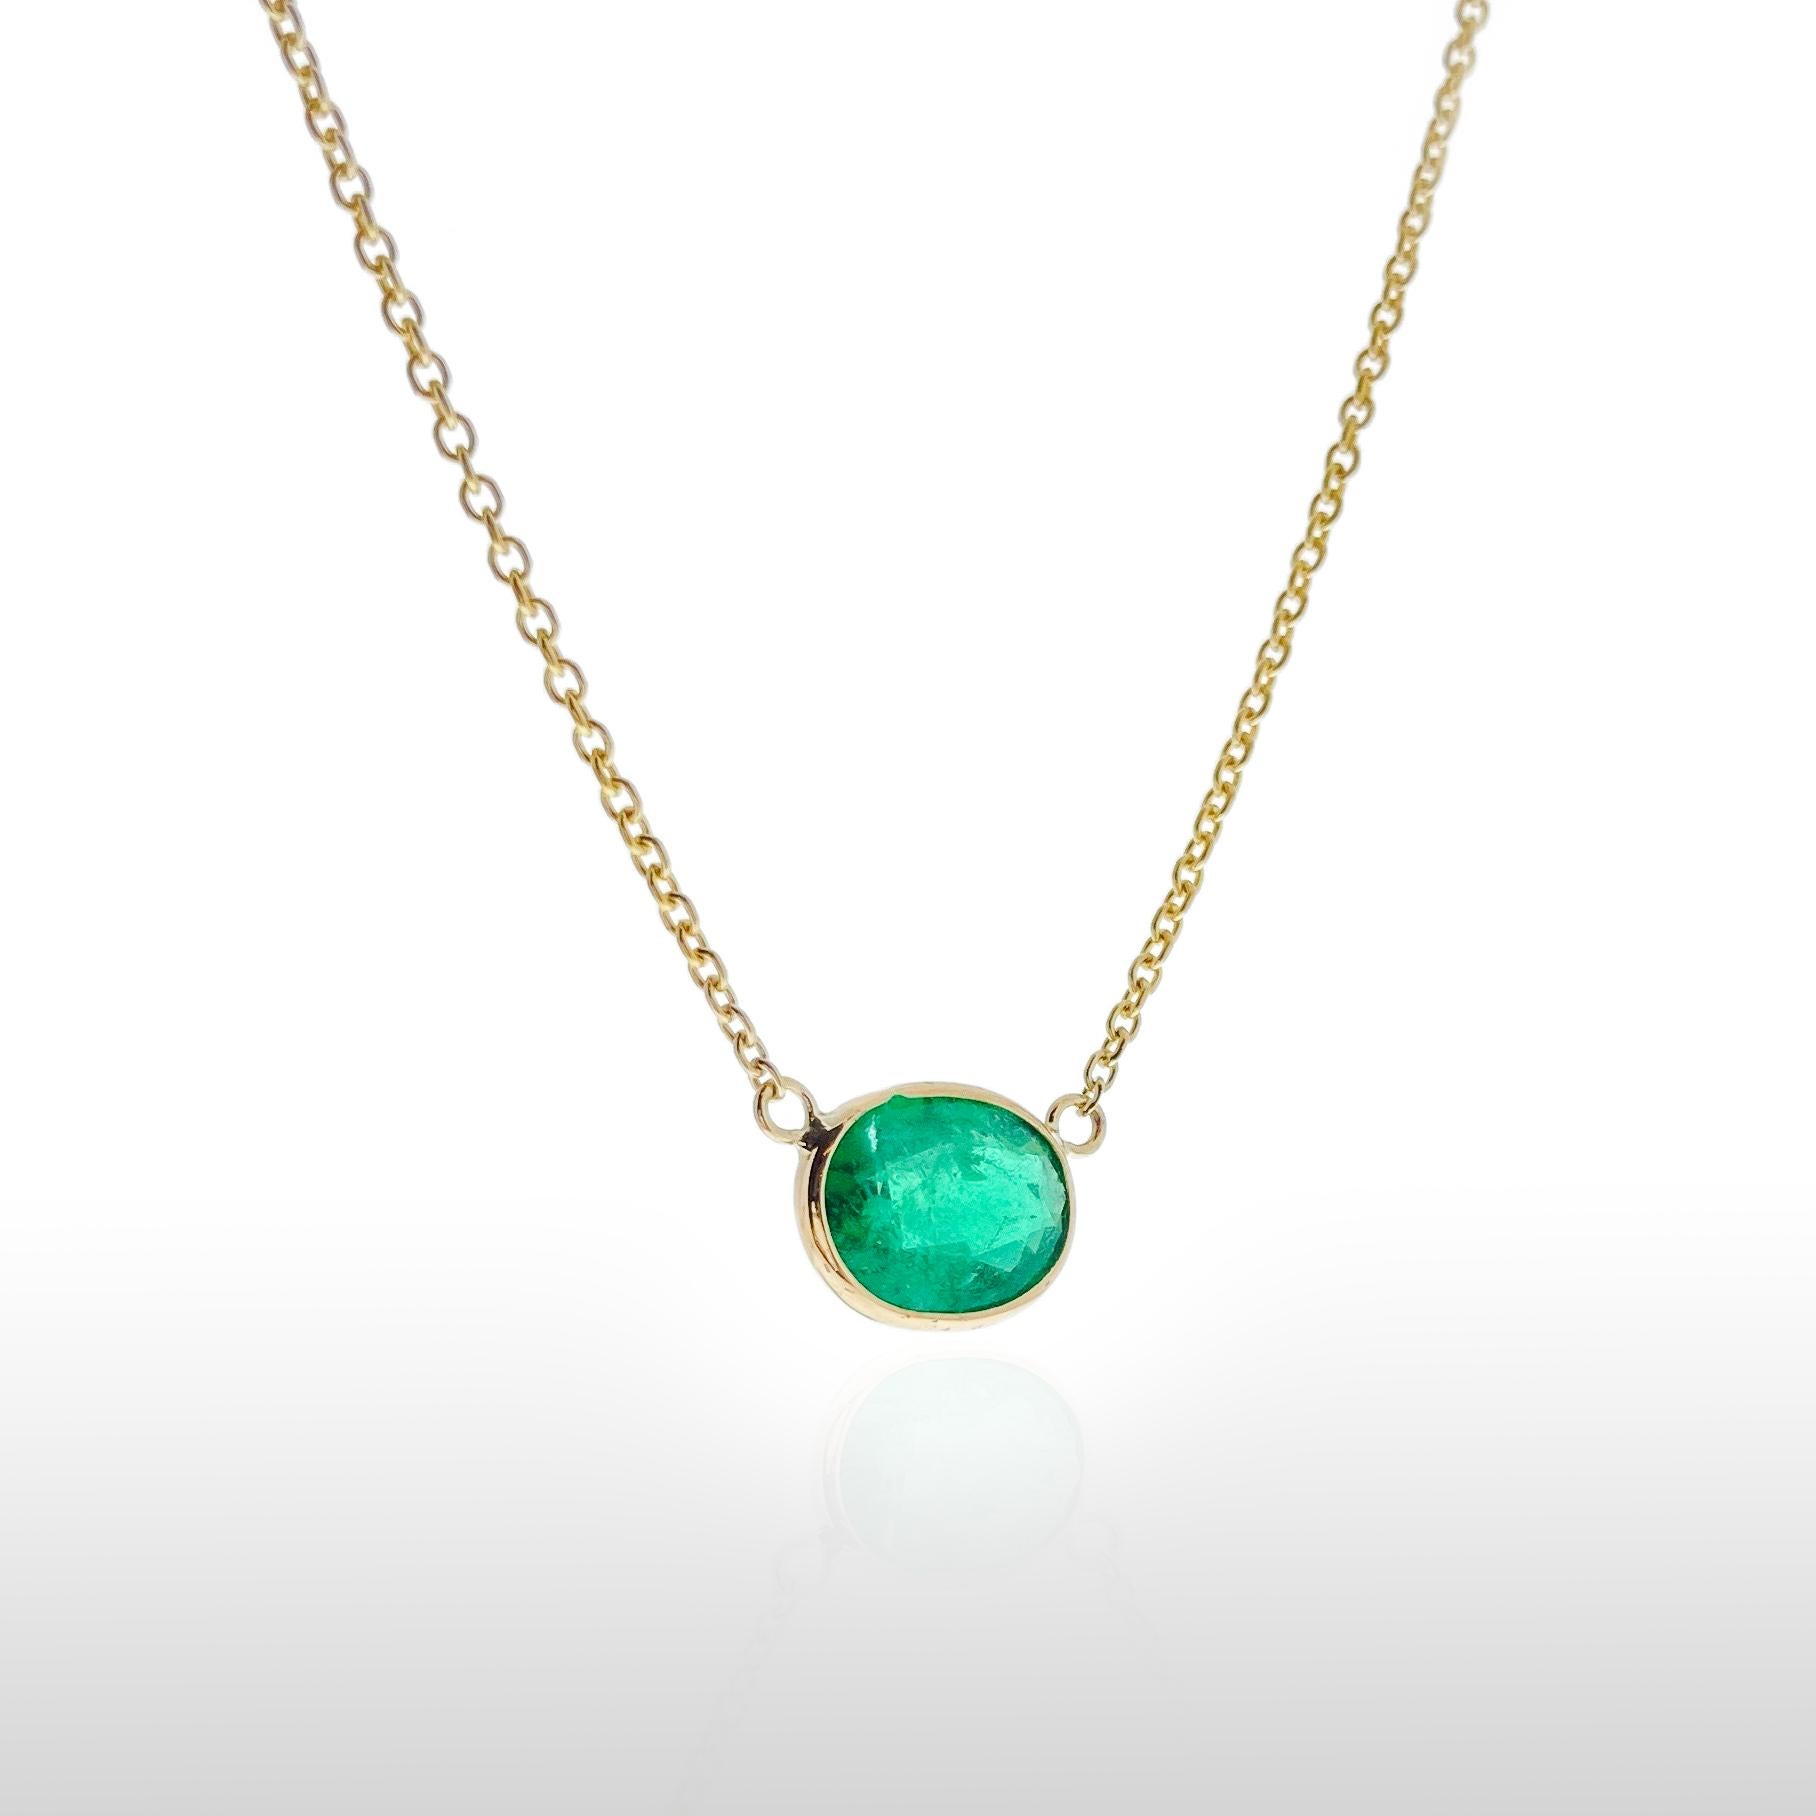 Dieses Collier enthält einen grünen Smaragd im Birnenschliff mit einem Gewicht von 1,92 Karat, gefasst in 14 Karat Gelbgold (YG). Smaragde werden wegen ihrer satten grünen Farbe sehr geschätzt, und der Birnenschliff mit seiner charakteristischen